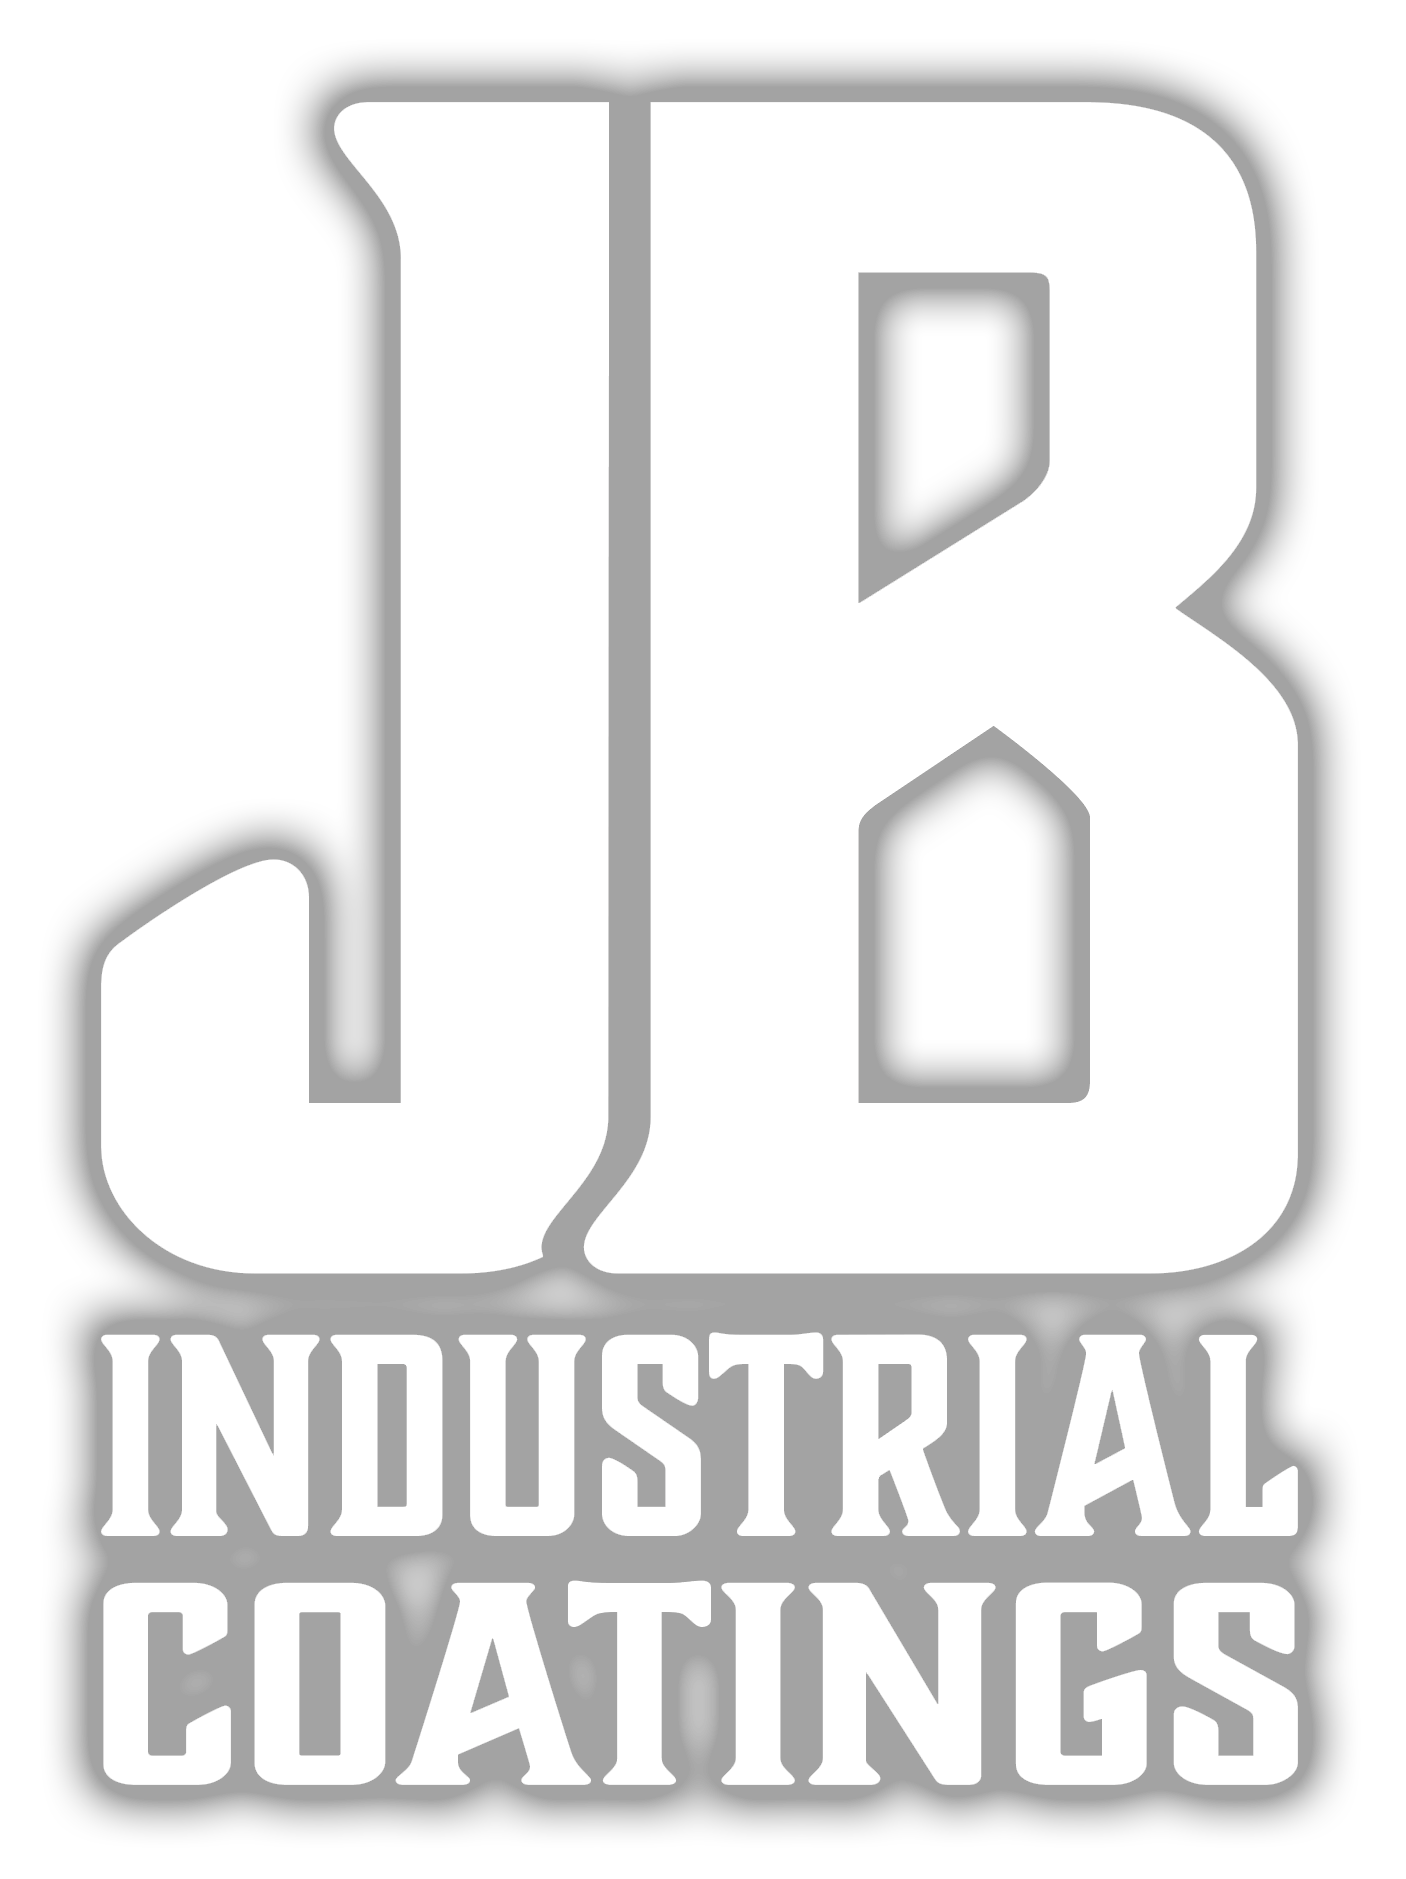 JB Industrial Coatings